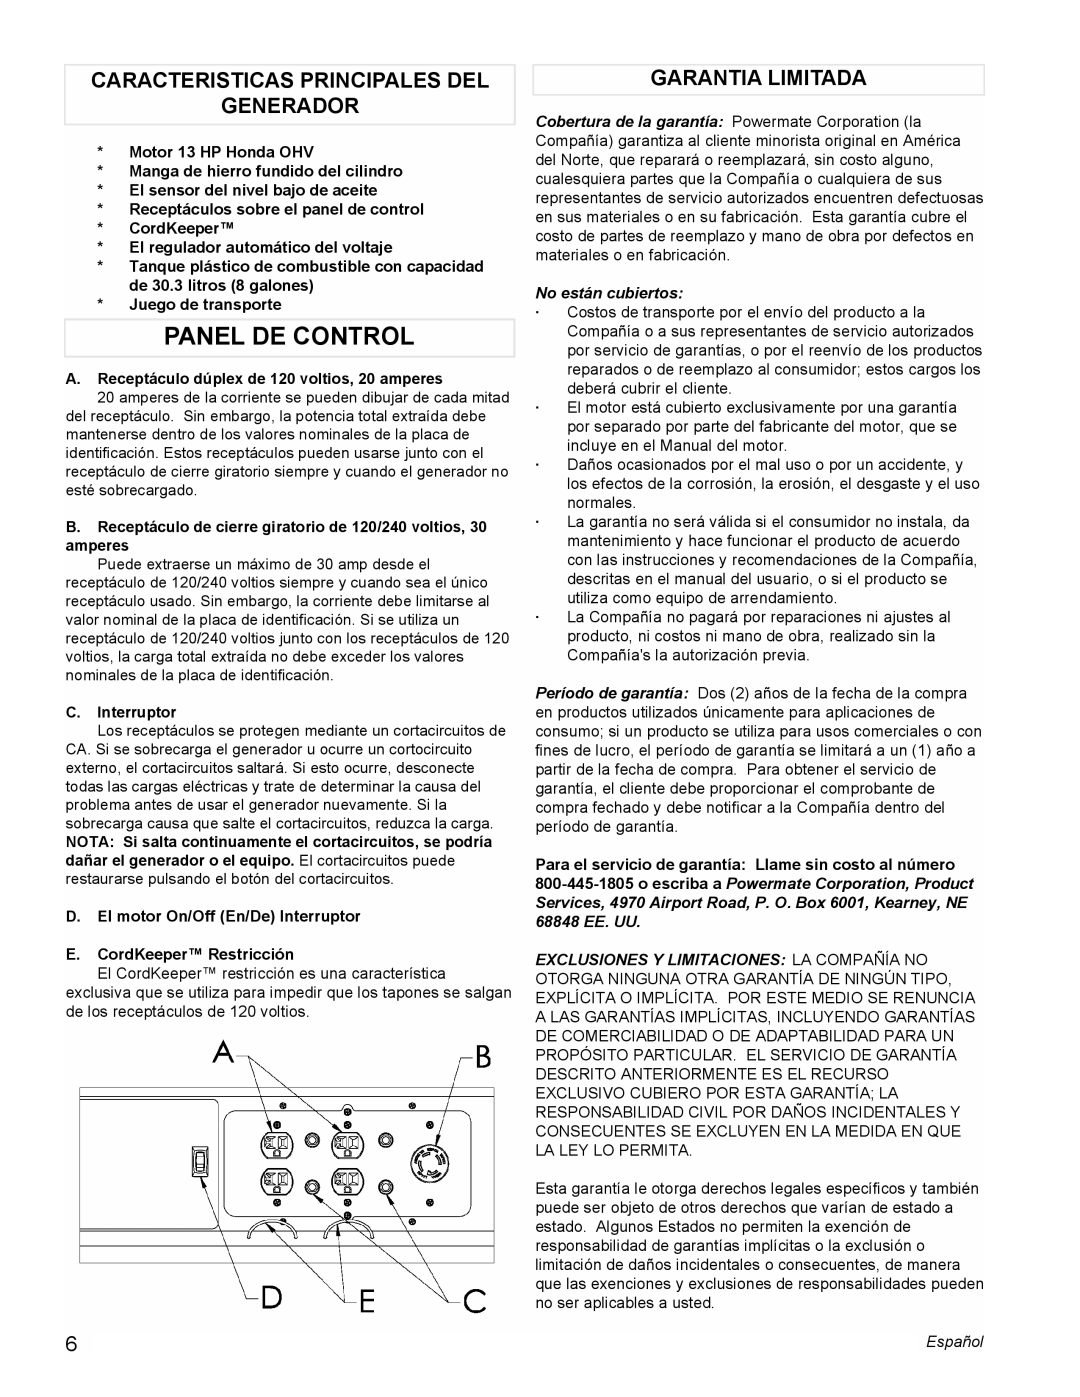 Powermate PM0496500.01 manual Panel De Control, Caracteristicas Principales Del Generador, Garantia Limitada 